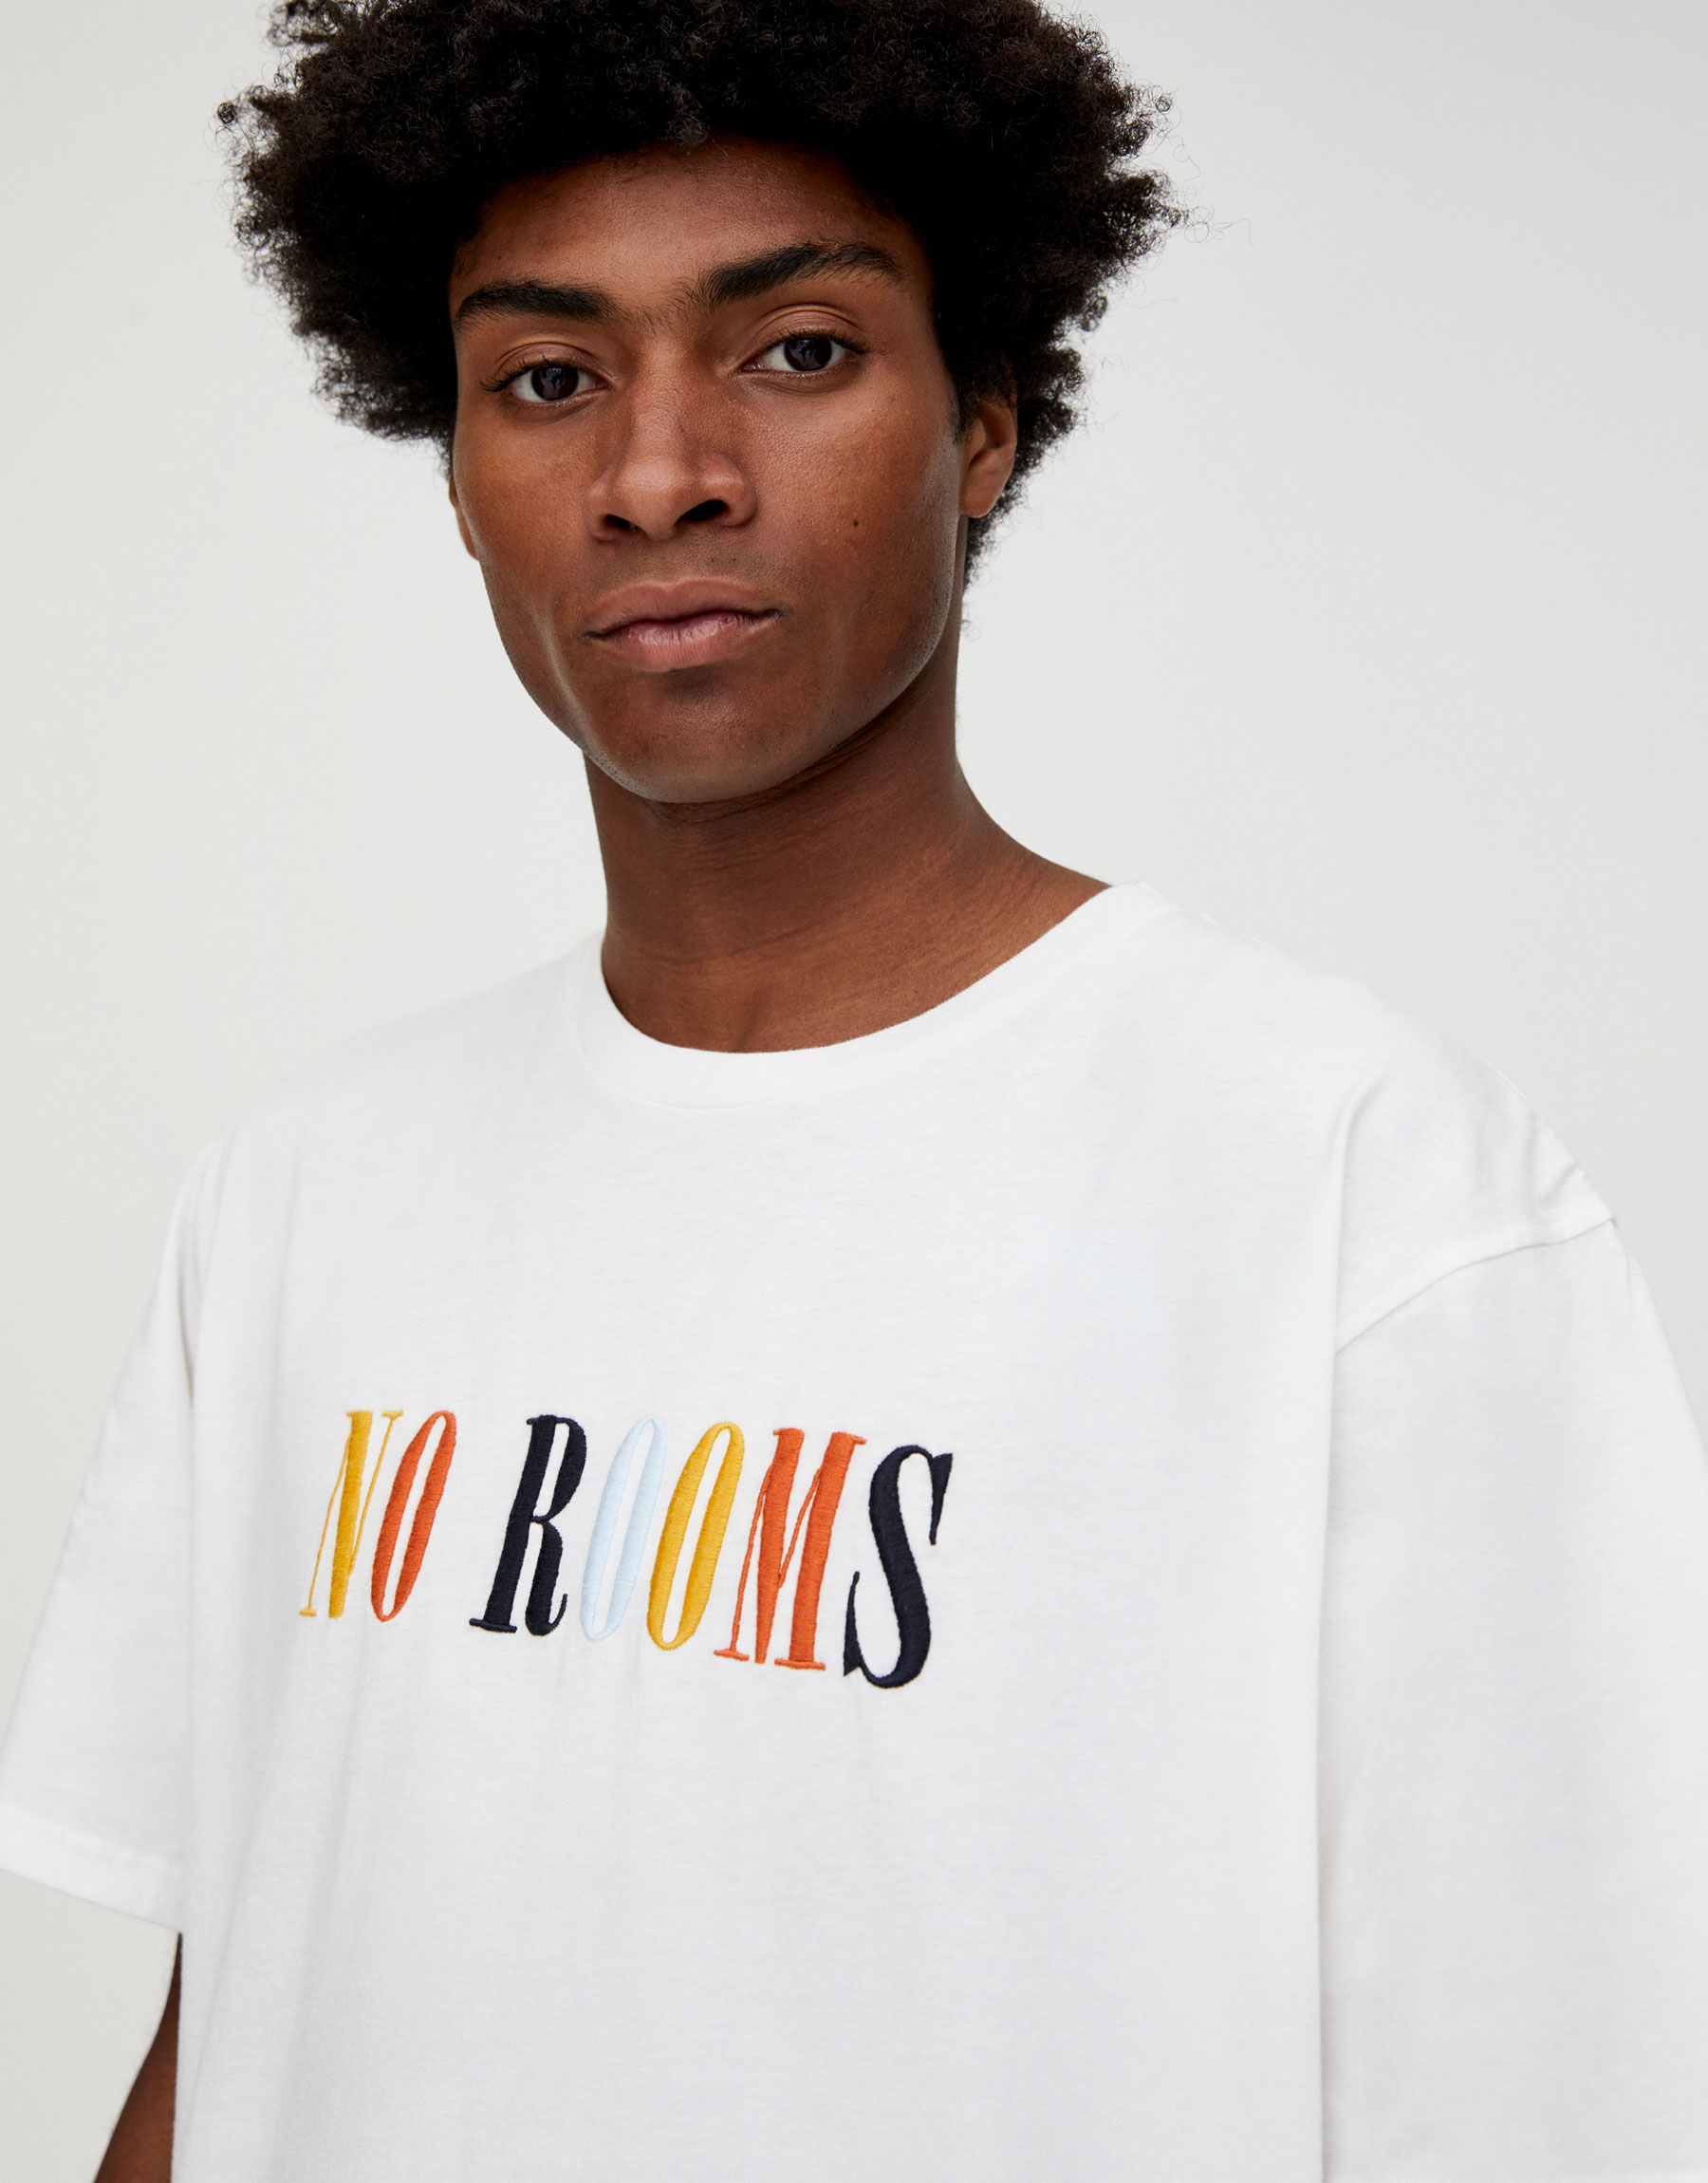 objetivo Automático Esencialmente Pull & Bear - Colorful “No Rooms” slogan T-shirt